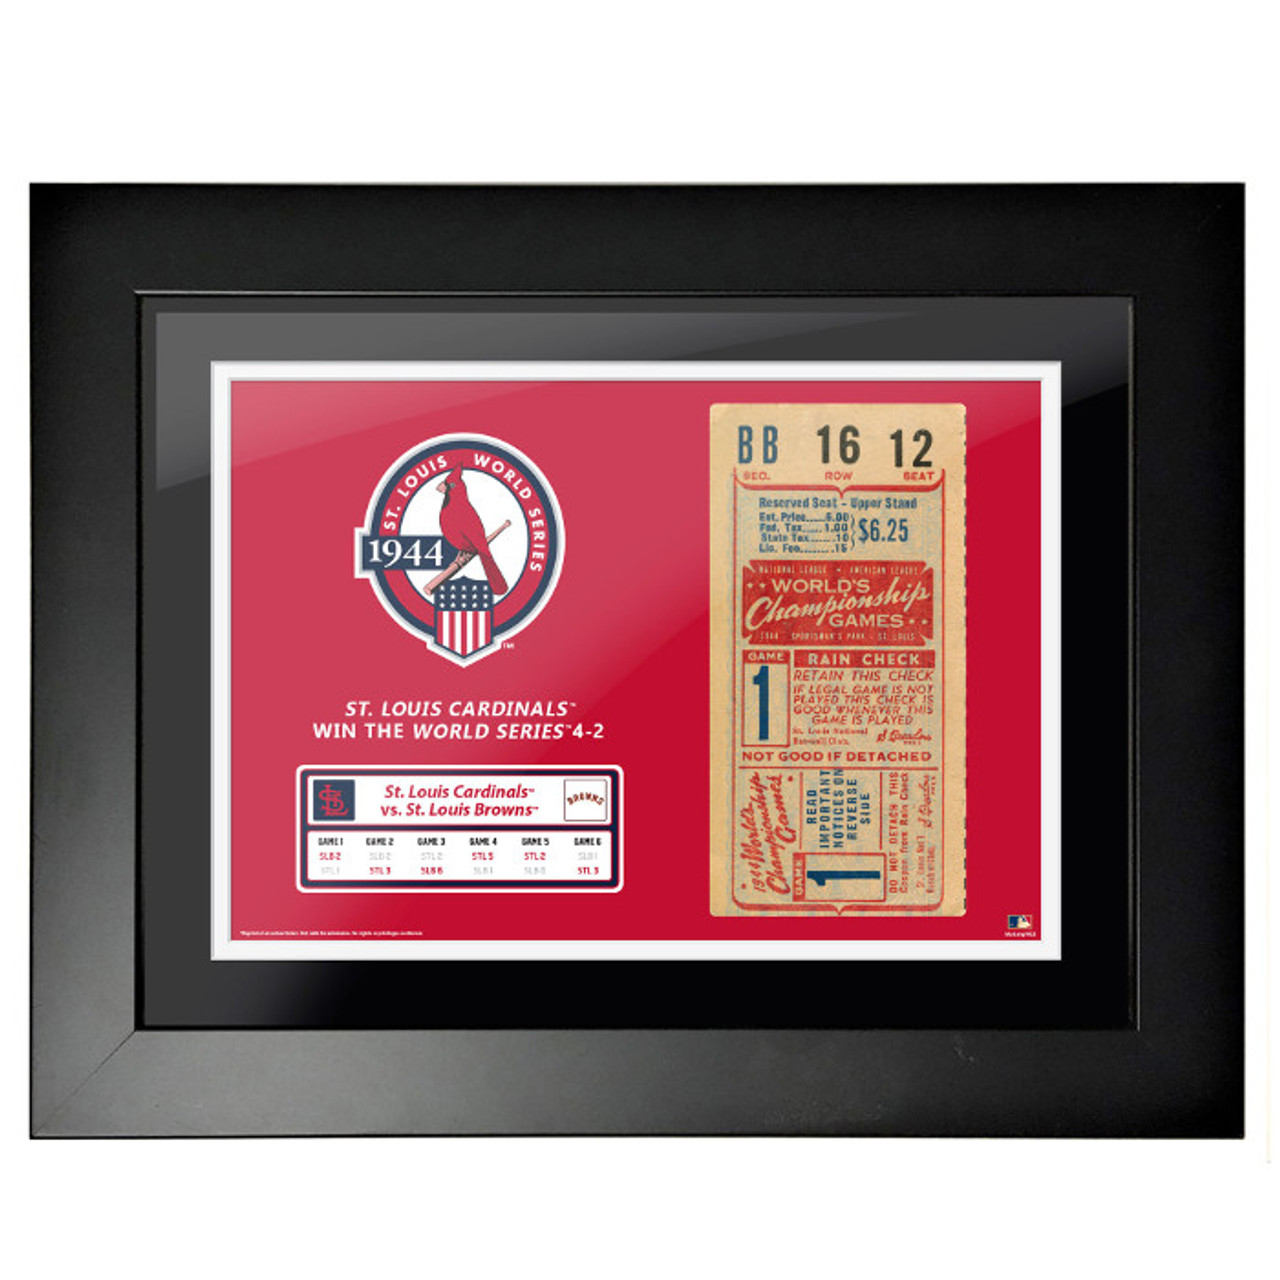 St. Louis Cardinals 1944 World Series 18'' x 14'' Framed Ticket